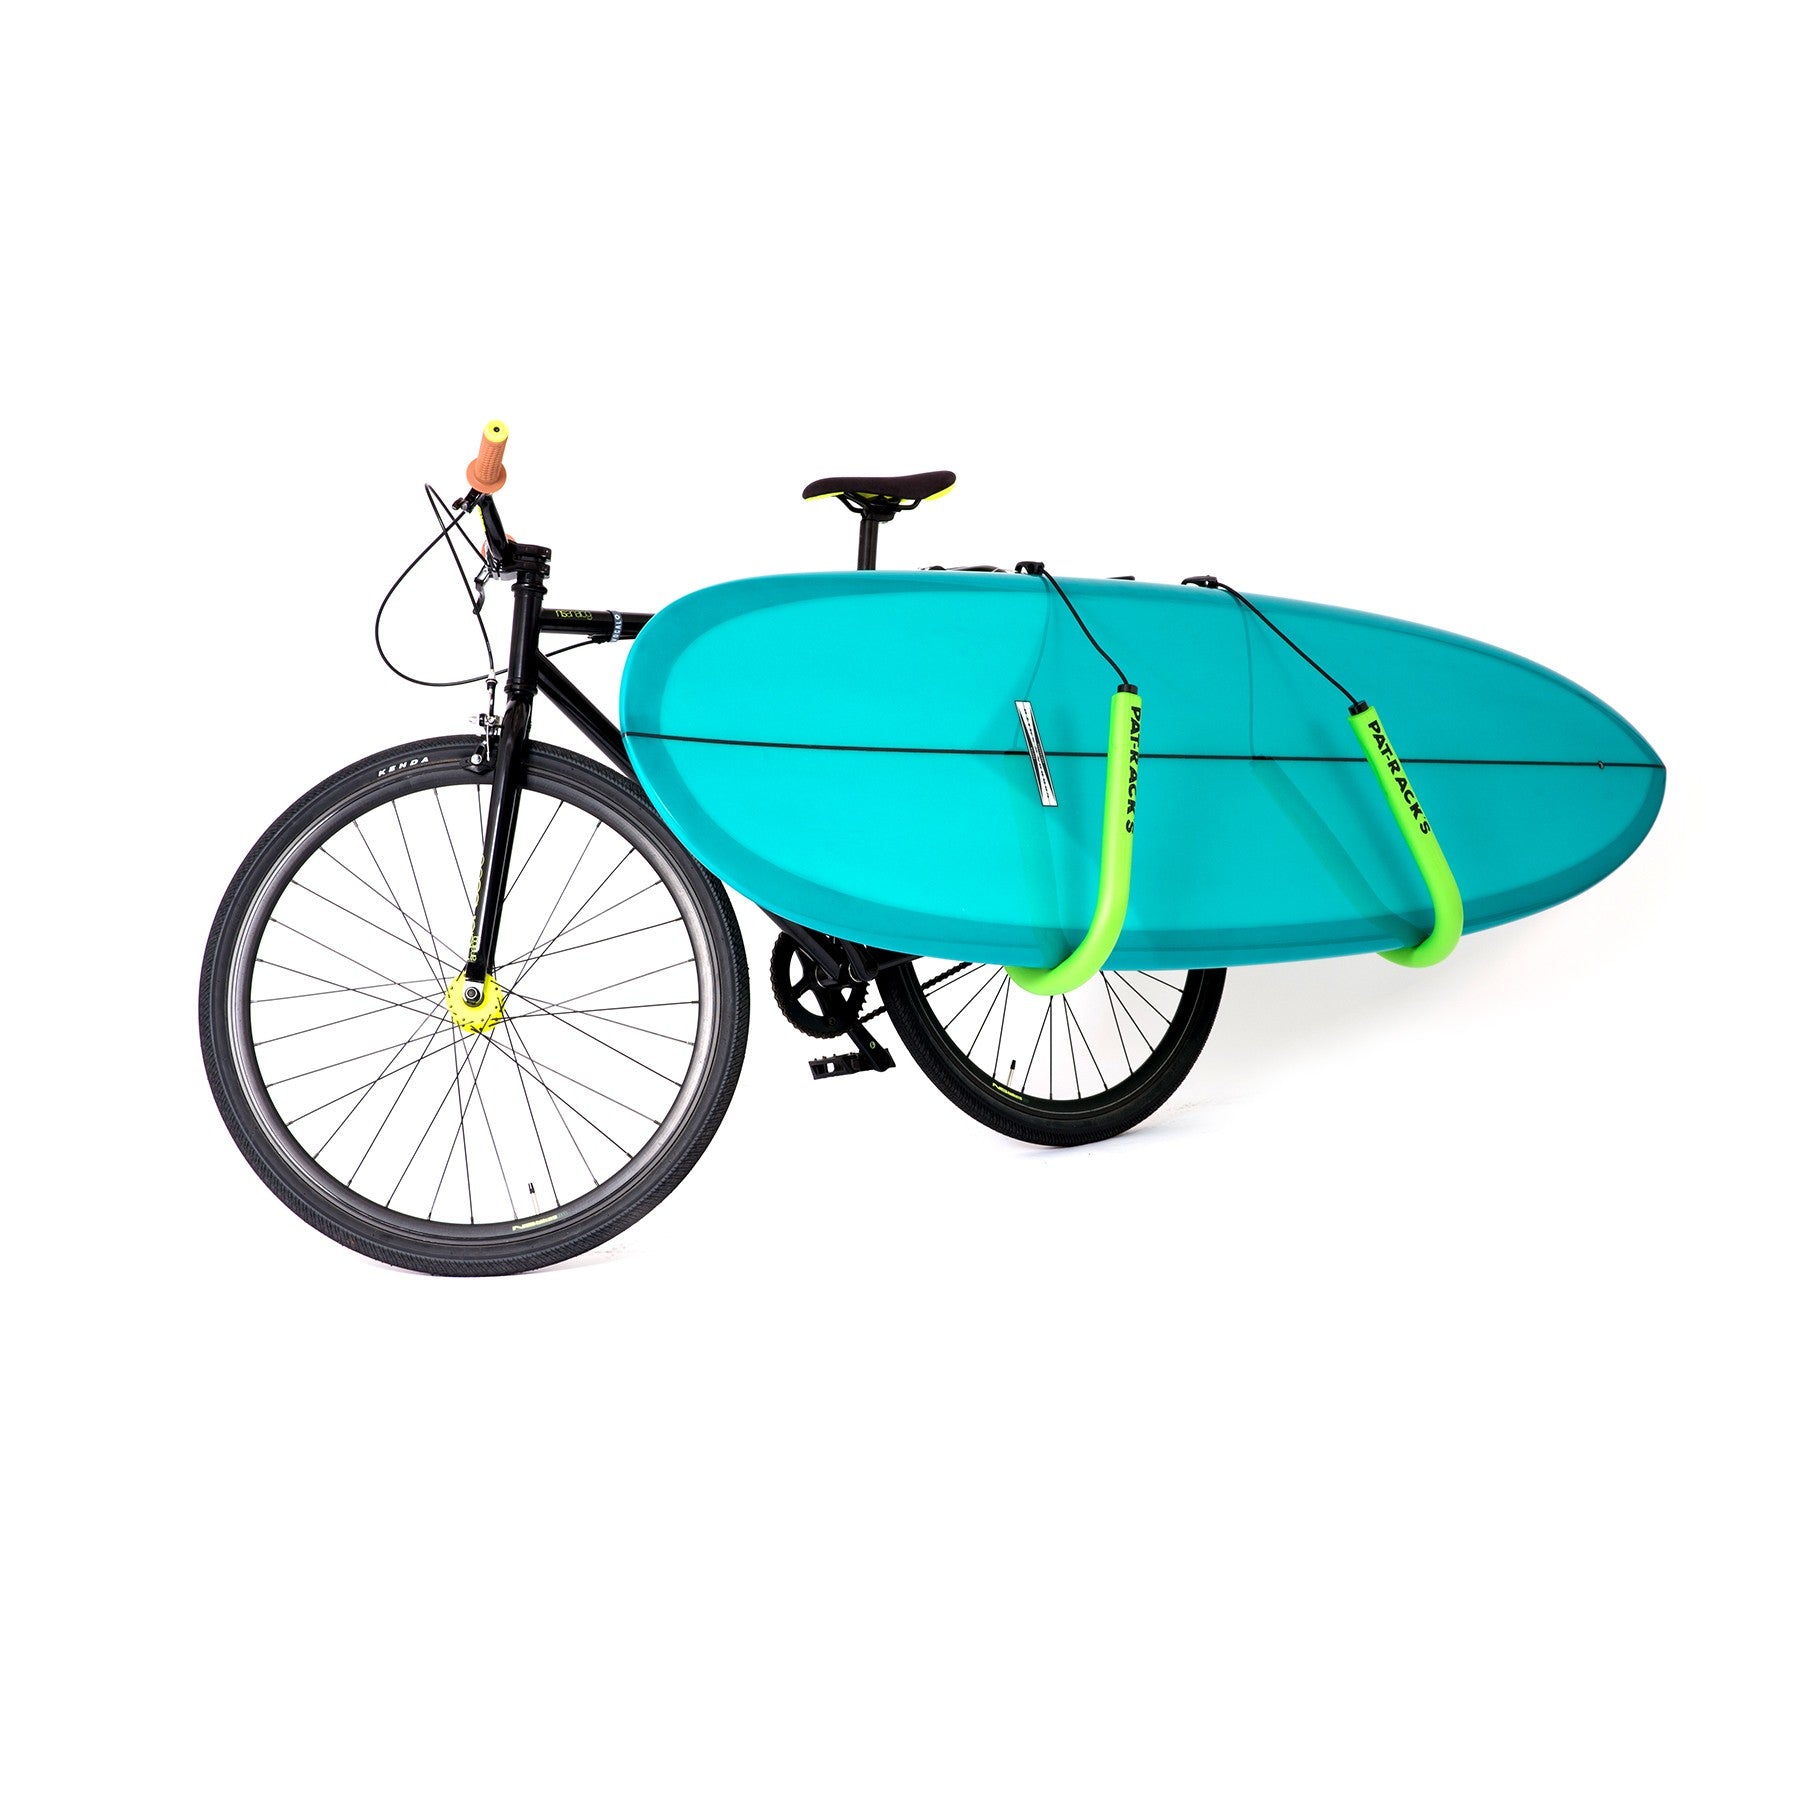 PAT RACKS - Soportes para bicicletas de surf - Longboard